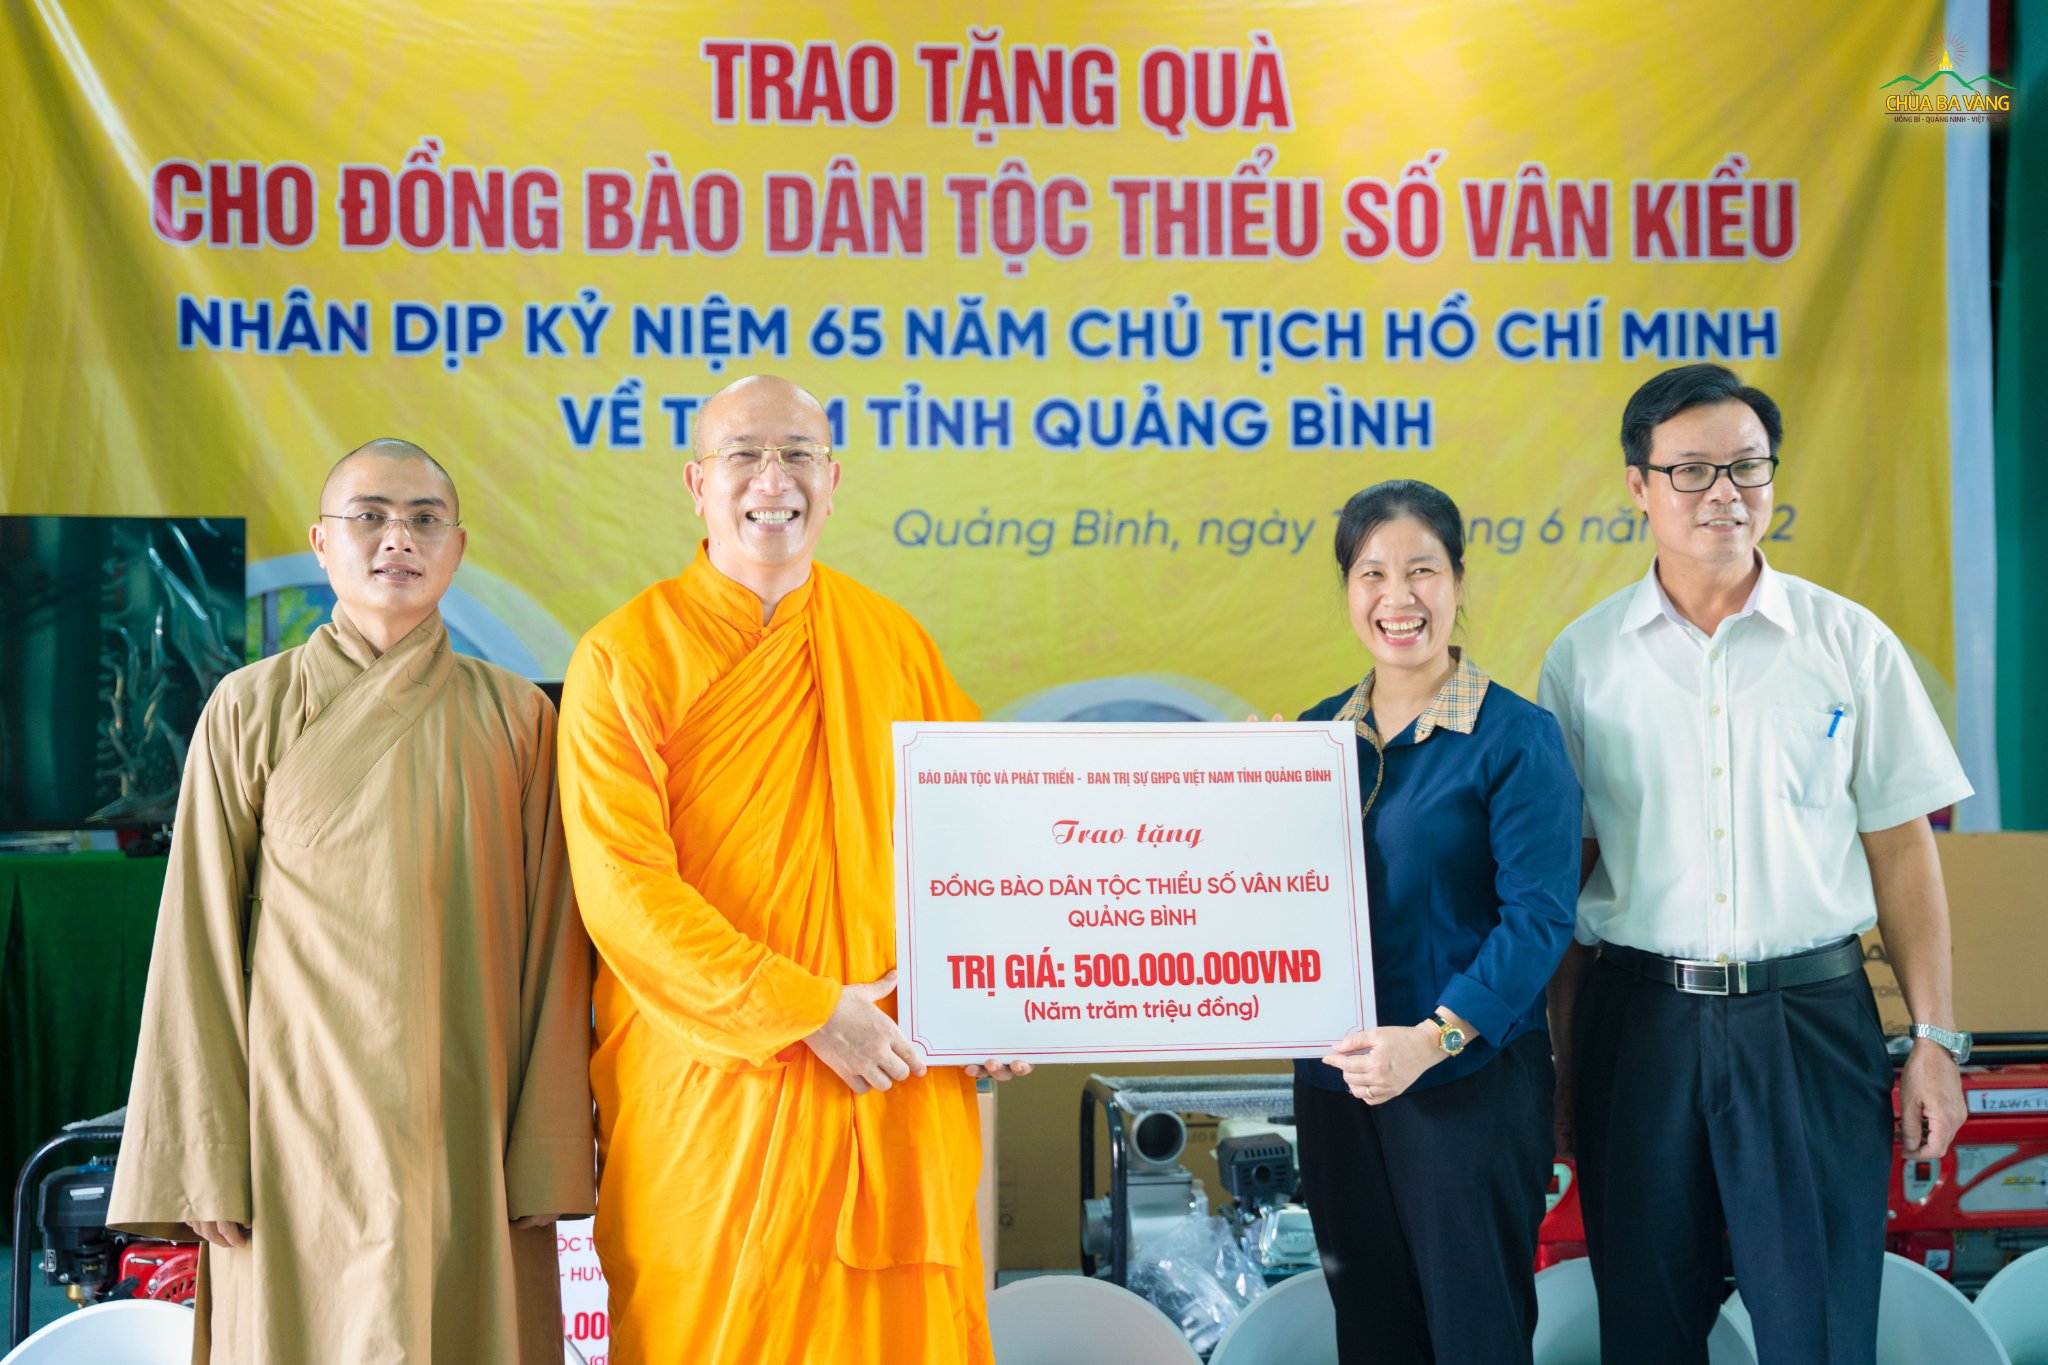 Đại đức Thích Trúc Thái Minh và các thành viên trong đoàn từ thiện trao các phần quà và hiện vật cho đại diện chính quyền các địa phương